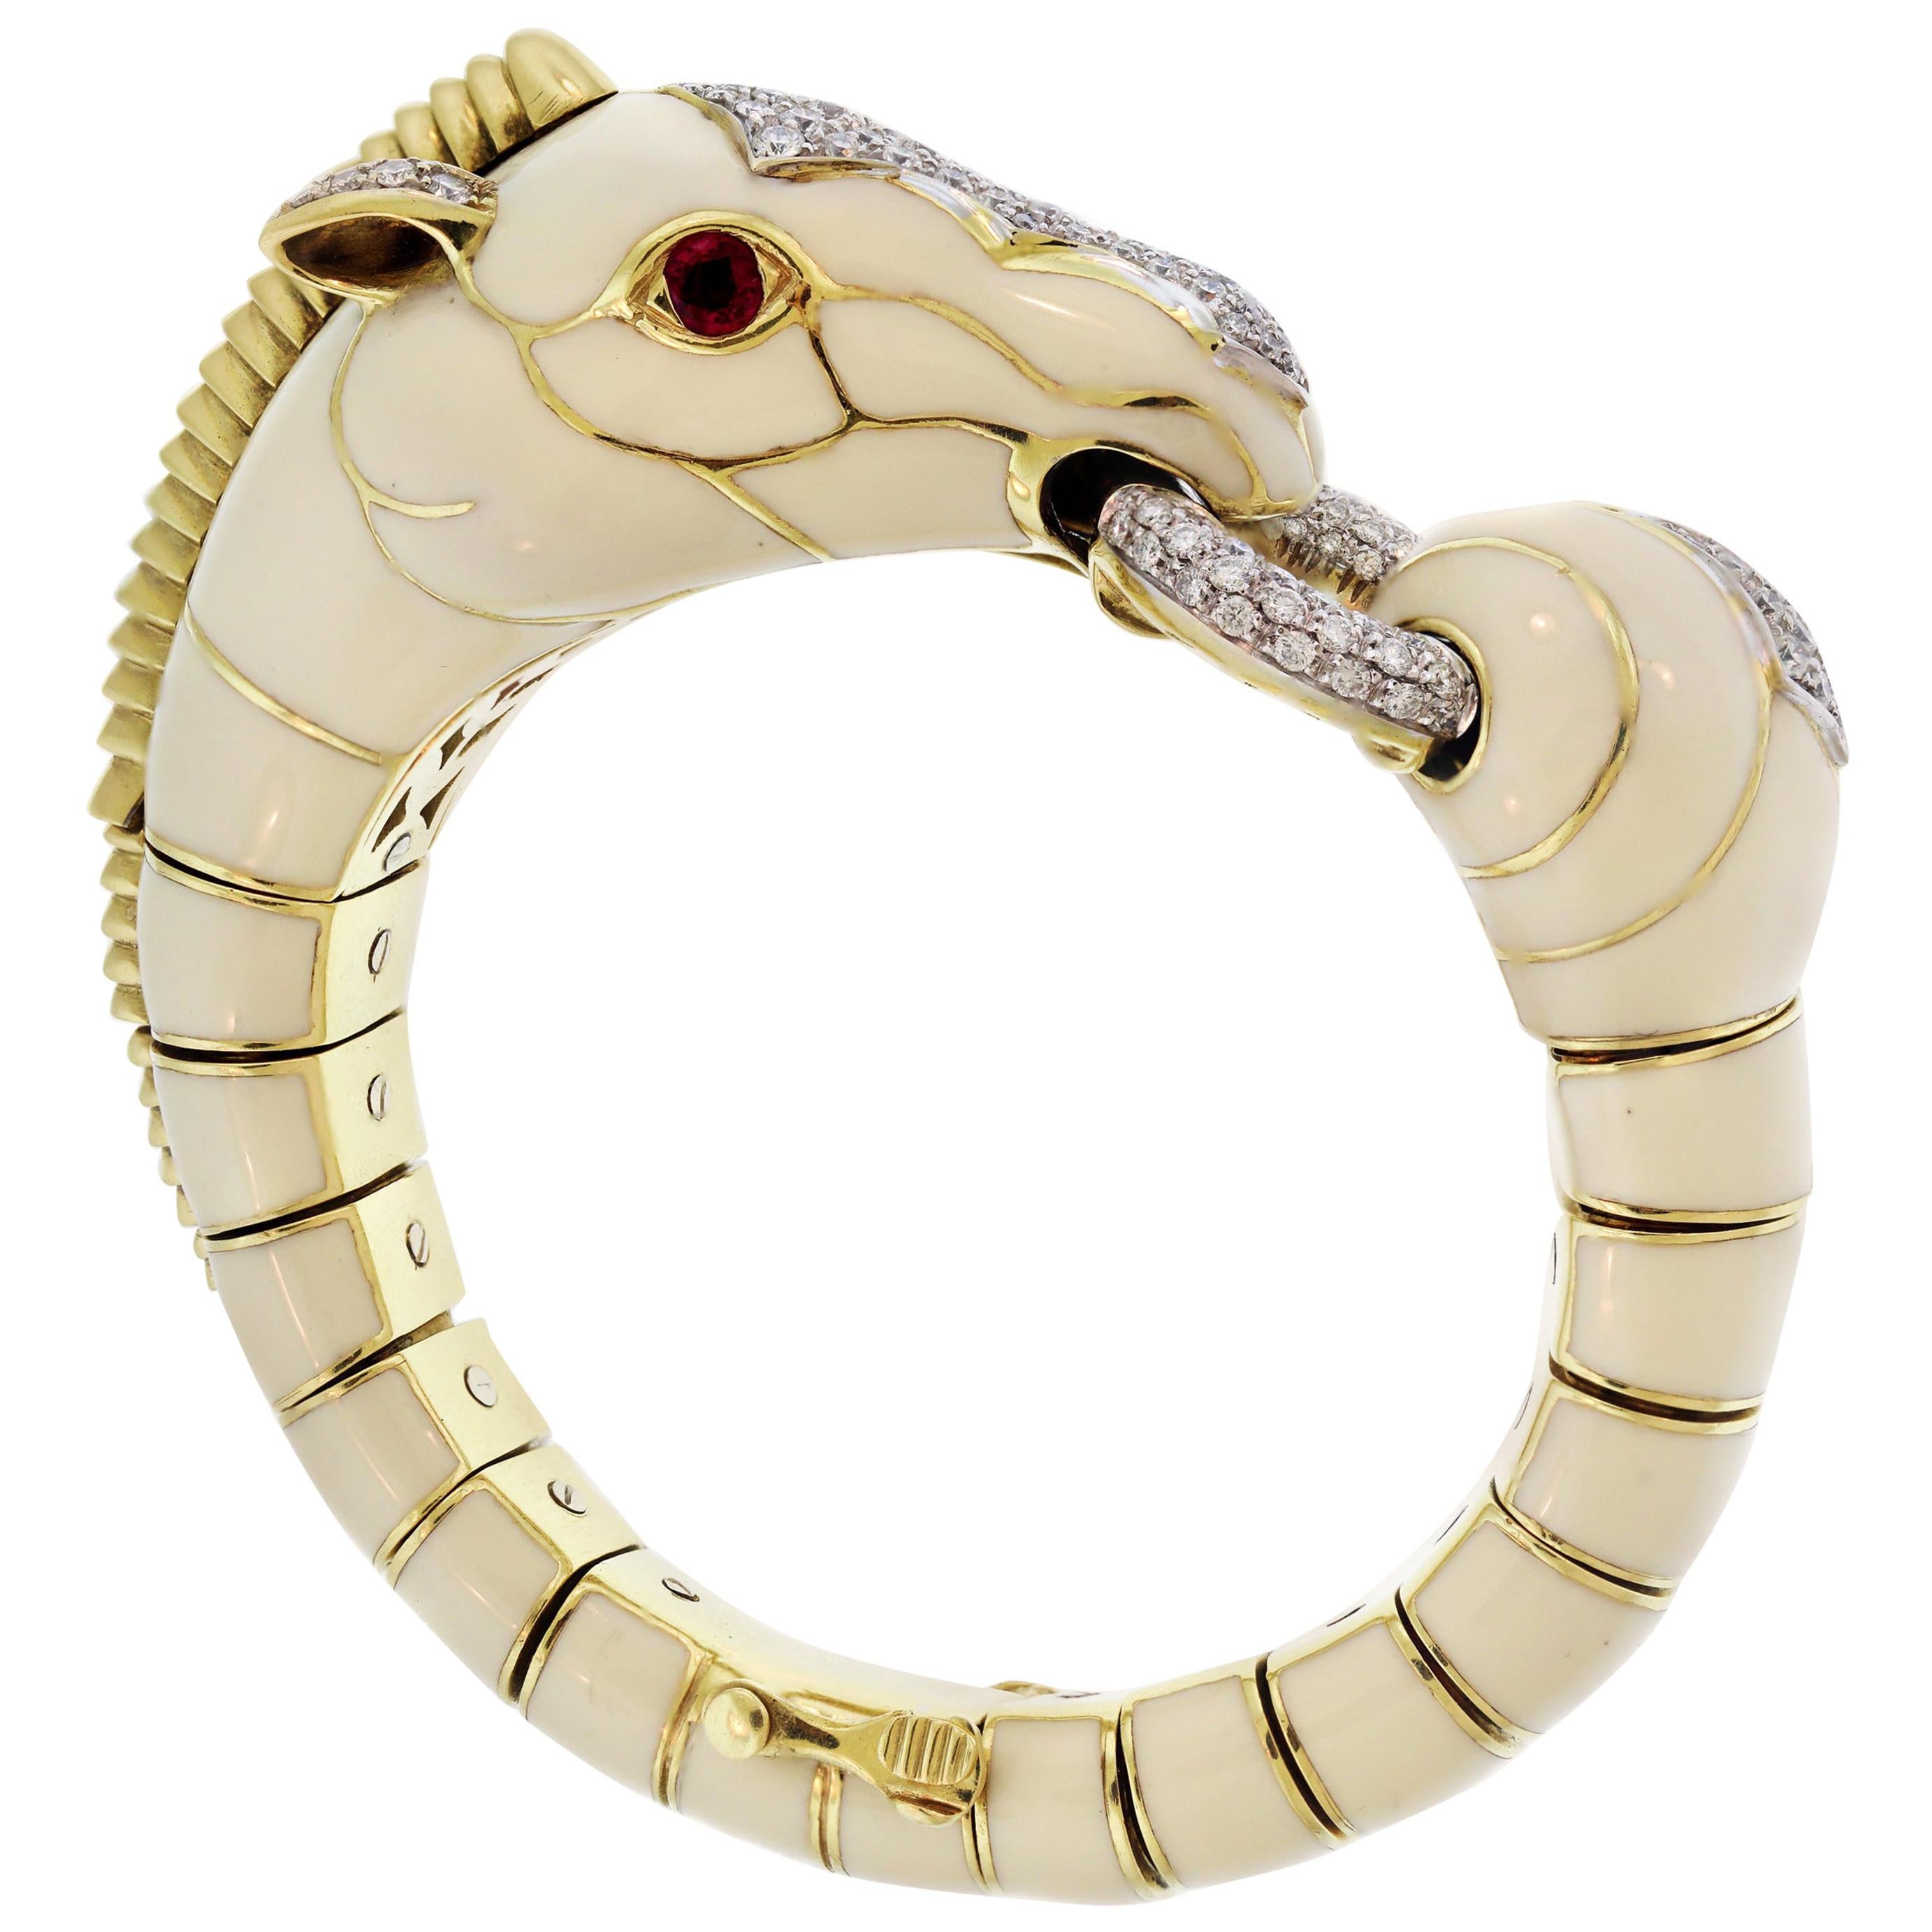 David Webb 18 Karat Gold Platinum White Enamel Diamond Ruby Horse Zebra Bracelet